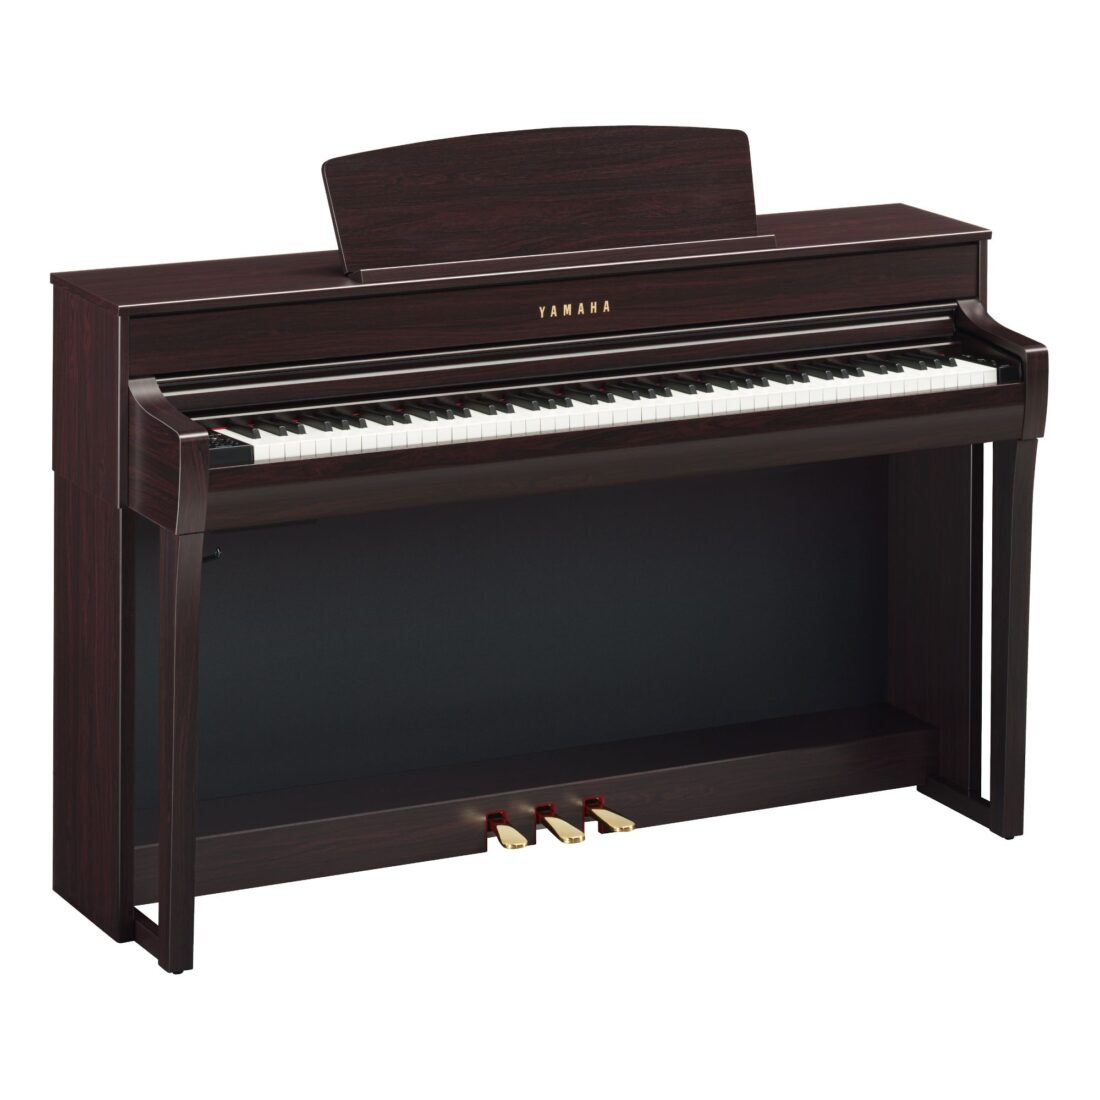 ヤマハ 電子ピアノ クラビノーバ CLP-745R ニューダークローズウッド